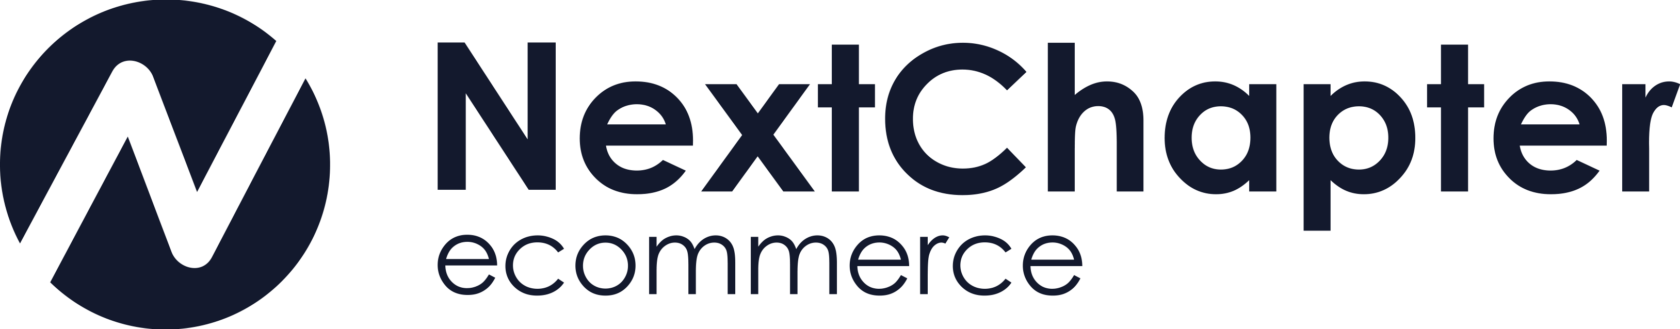 Nextchapter-ecommerce